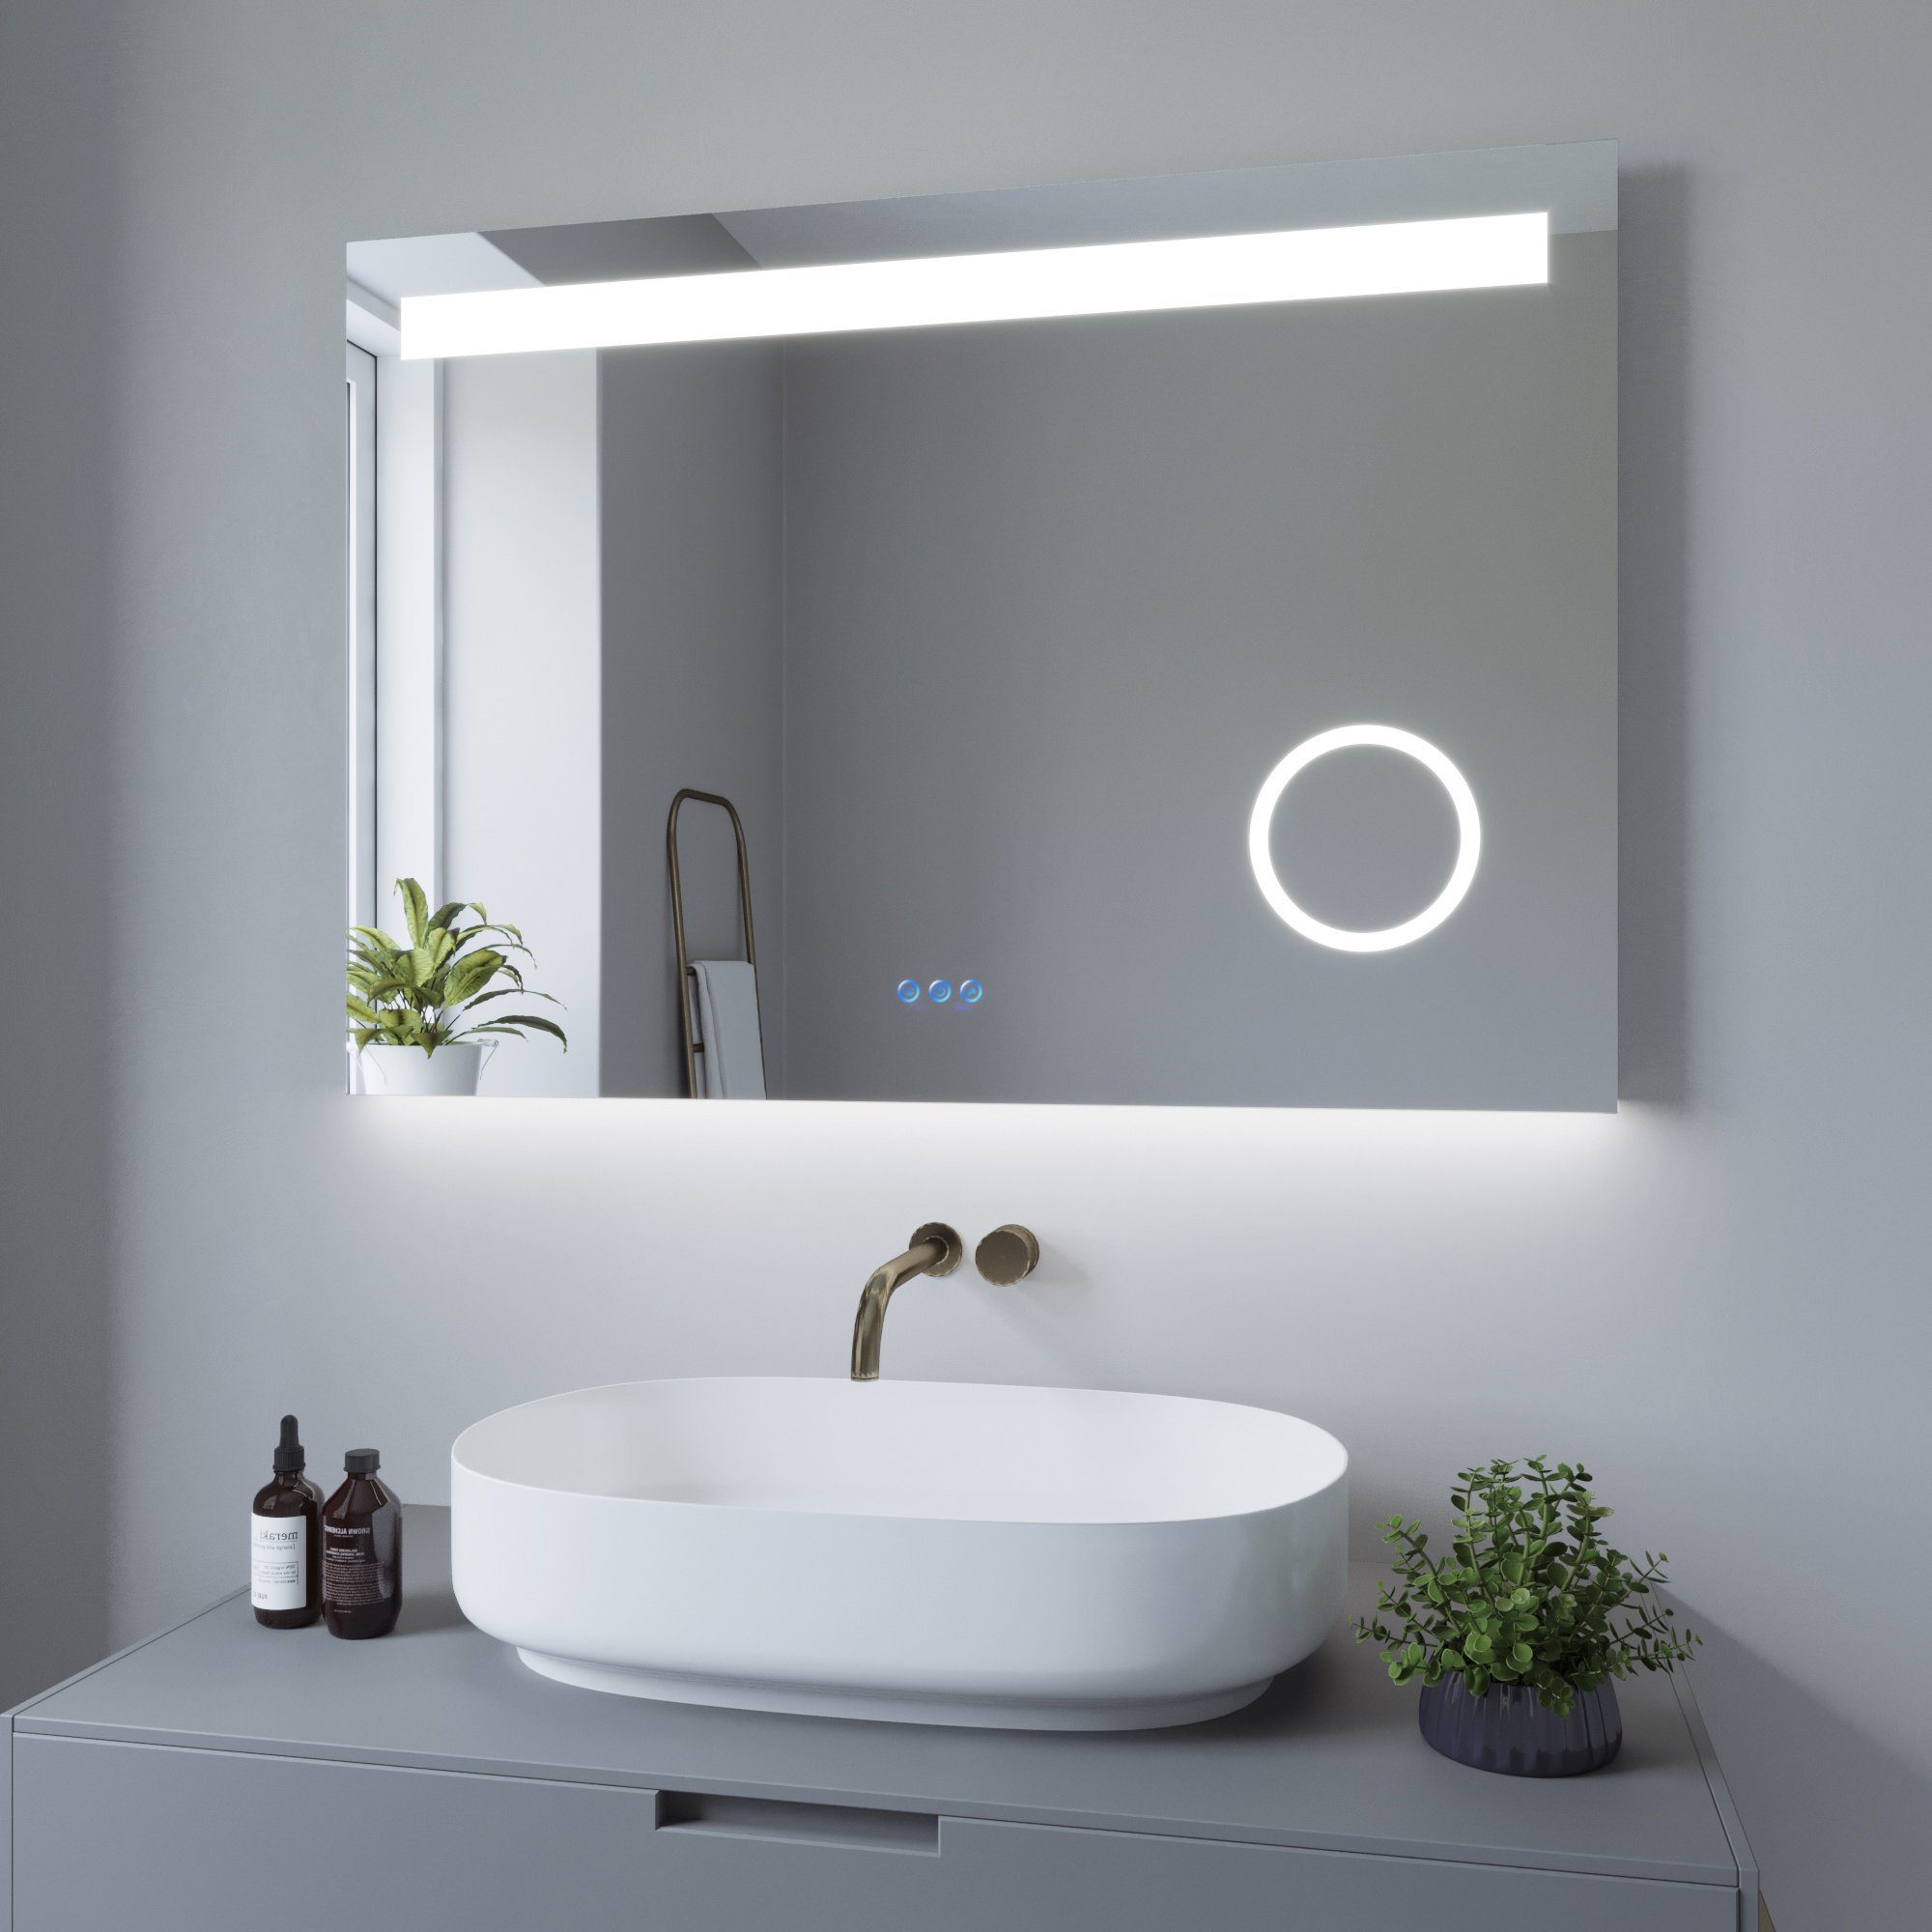 AQUALAVOS Badspiegel LED Badspiegel Beleuchtung Kosmetikspiegel Antibeschlage Lichtspiegel, mit 6400K Kaltweiß&Warmweiß 3000K Beleuchtung, Touch-Schalter Dimmbar